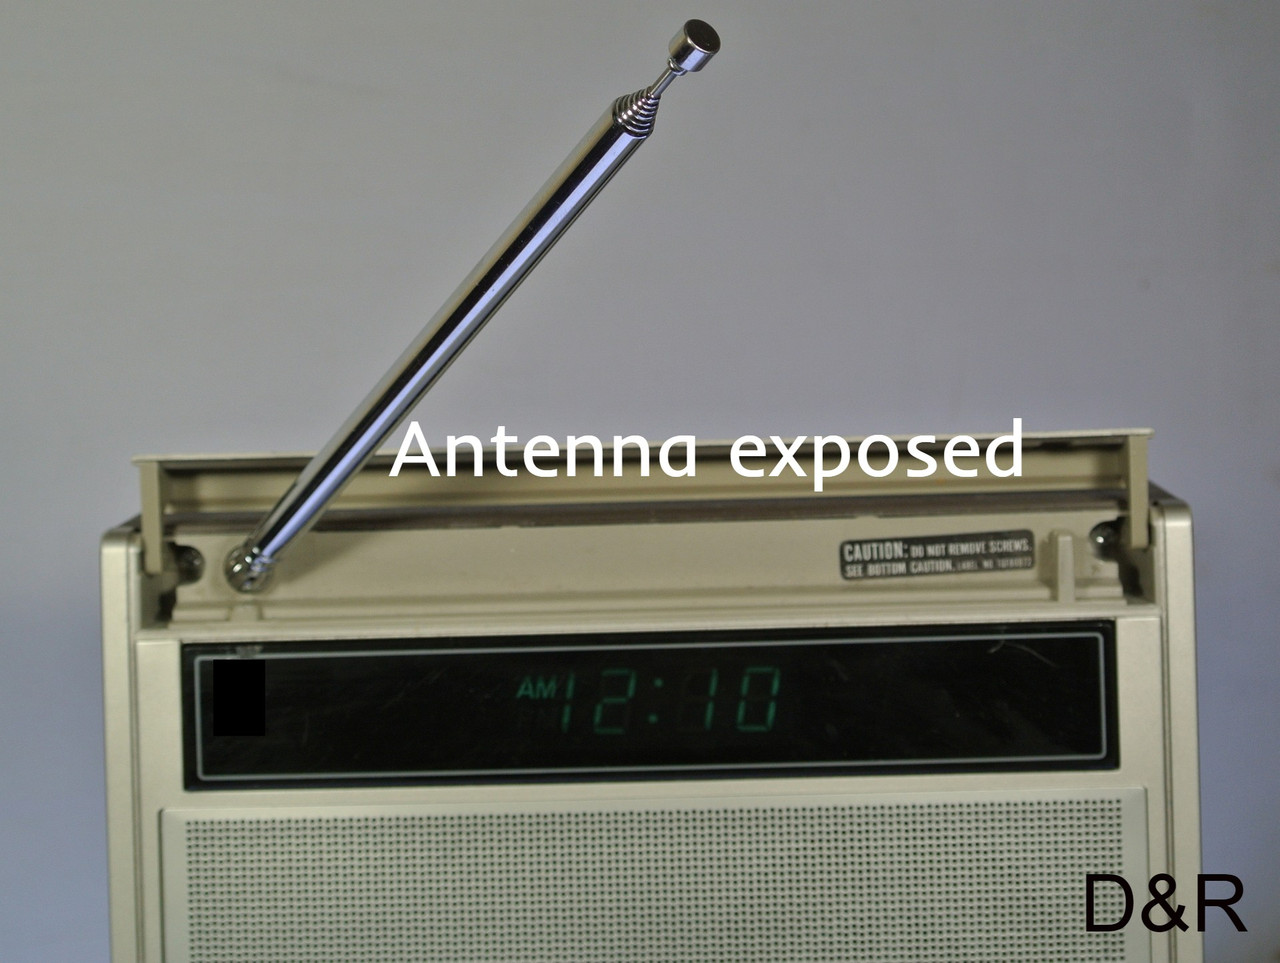 File:Vintage Panasonic Tele-Talk FM-AM Talking Clock Radio With